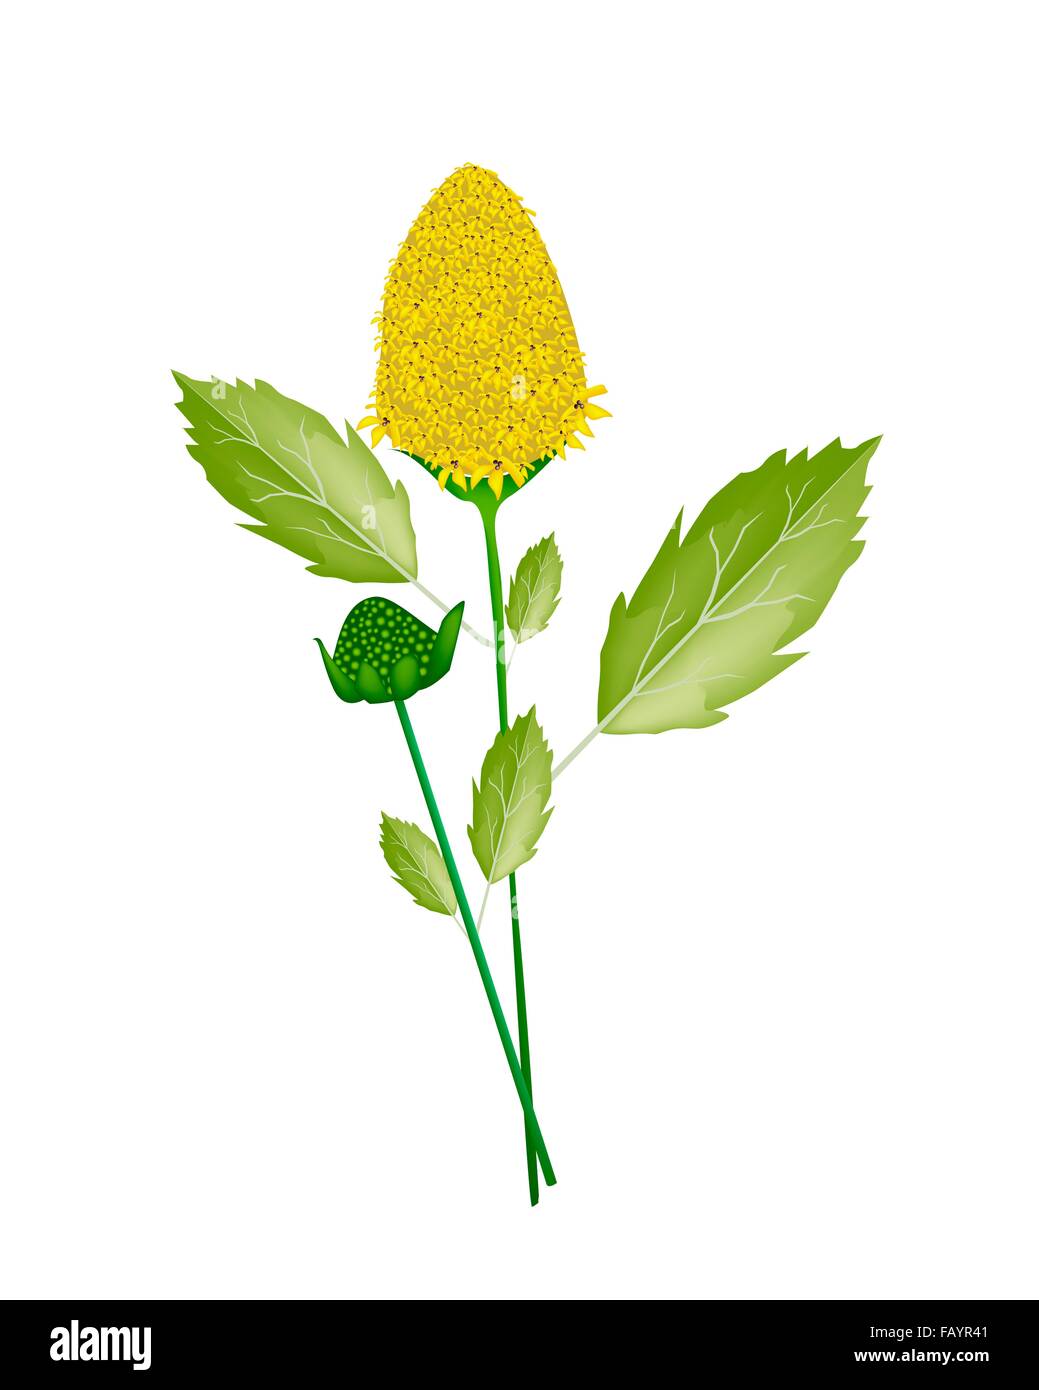 Gemüse- und Kräutergarten, eine Illustration des frischen Parakresse-Pflanze mit schönen gelben Blüten in der Küche zum Würzen verwendet. Stockfoto